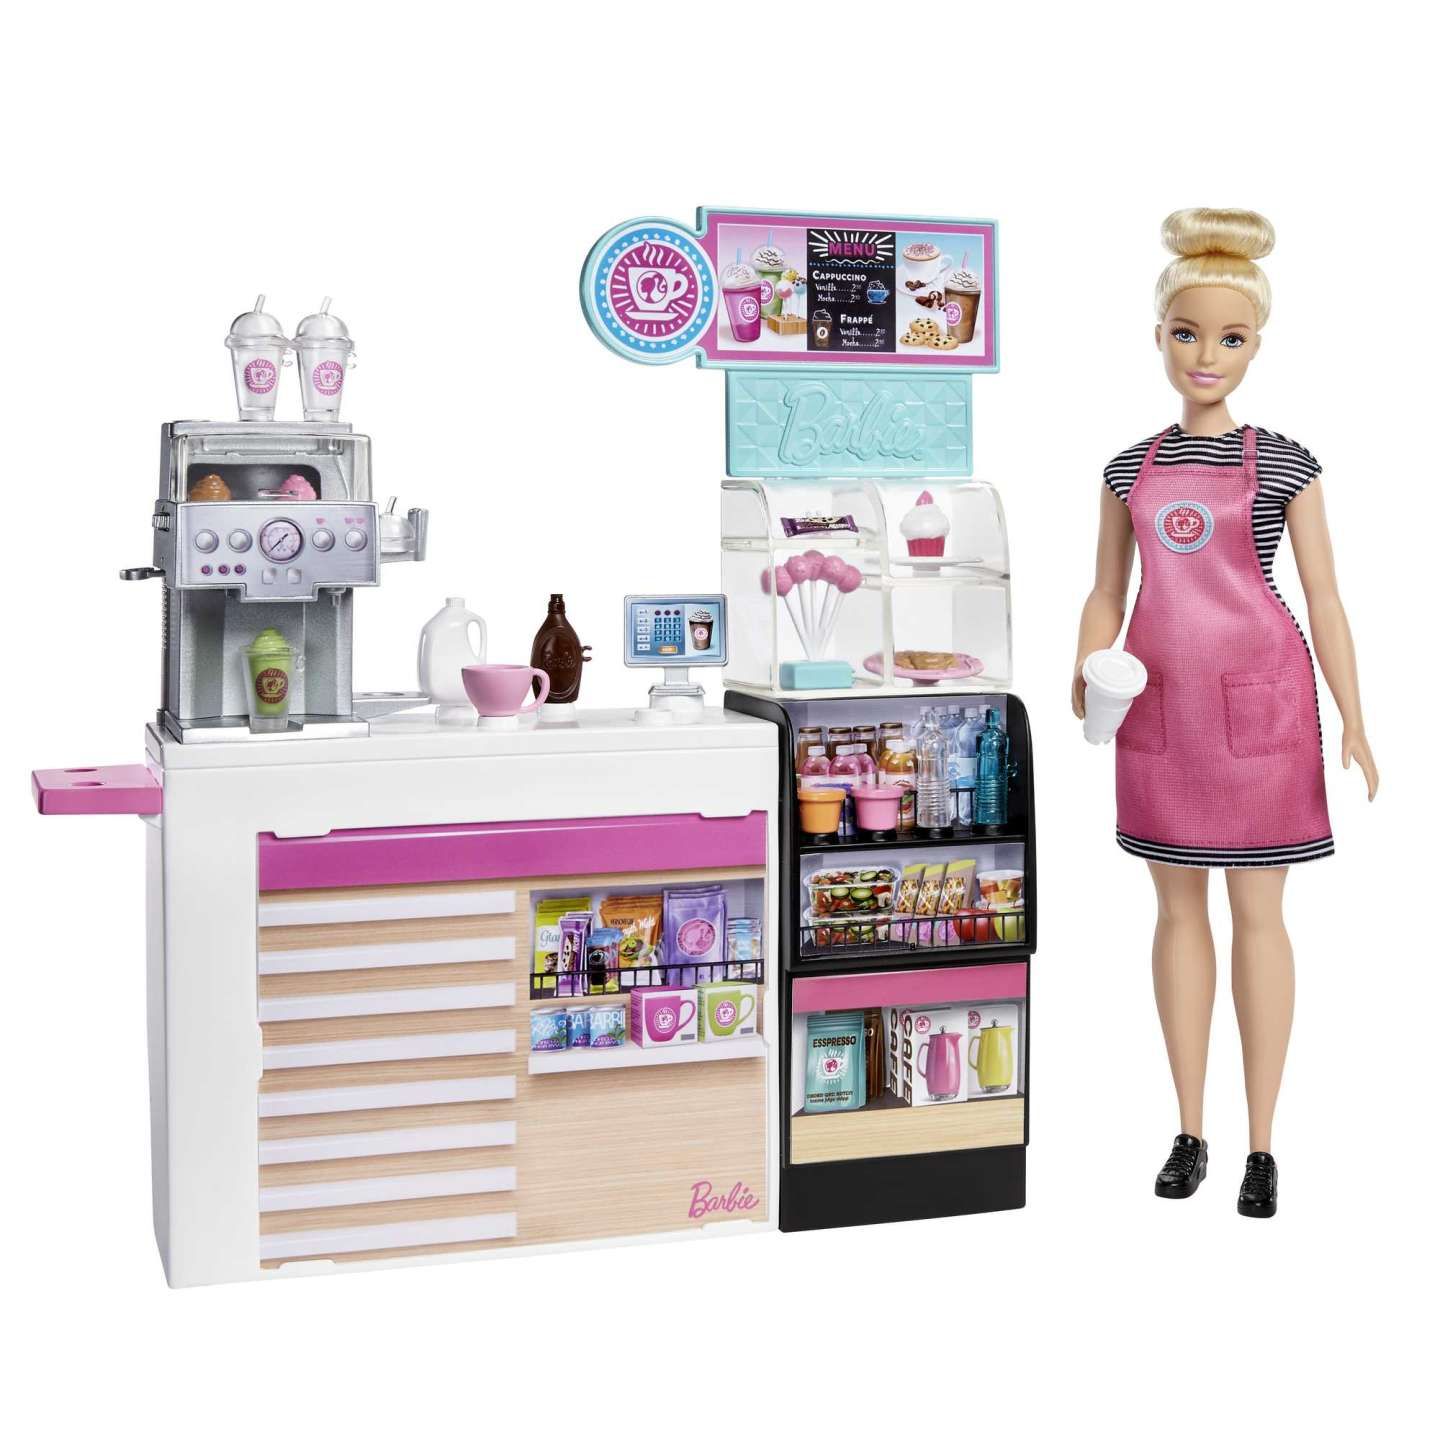 Кукла барби магазин. Барби кофейня Барби кофейня. Набор Barbie Барби и друзья кухня повар и официант, fcp66. Барби кофейня игровой набор. Игровой набор Barbie кофейня, gmw03.